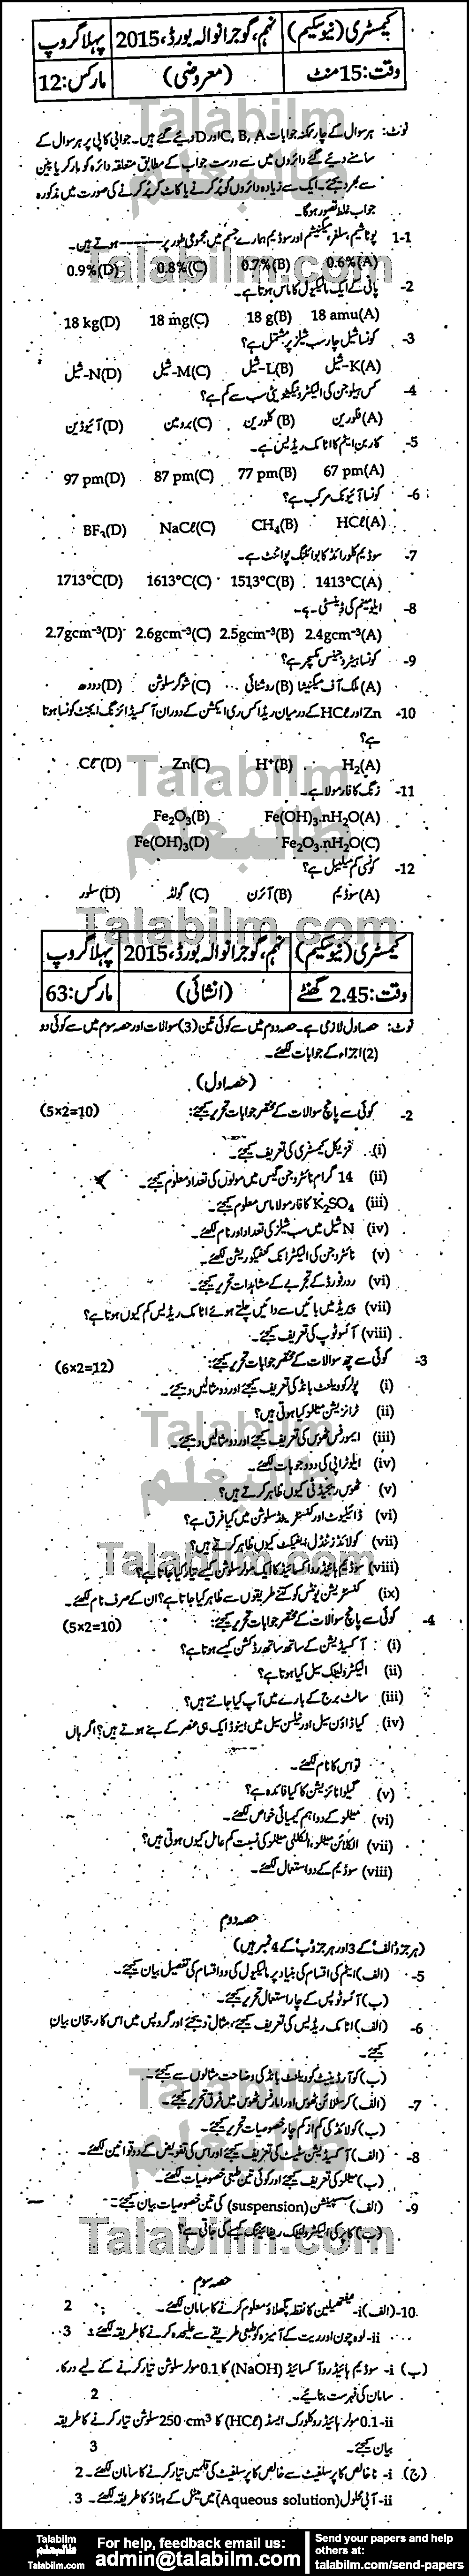 Chemistry 0 past paper for Urdu Medium 2015 Group-I